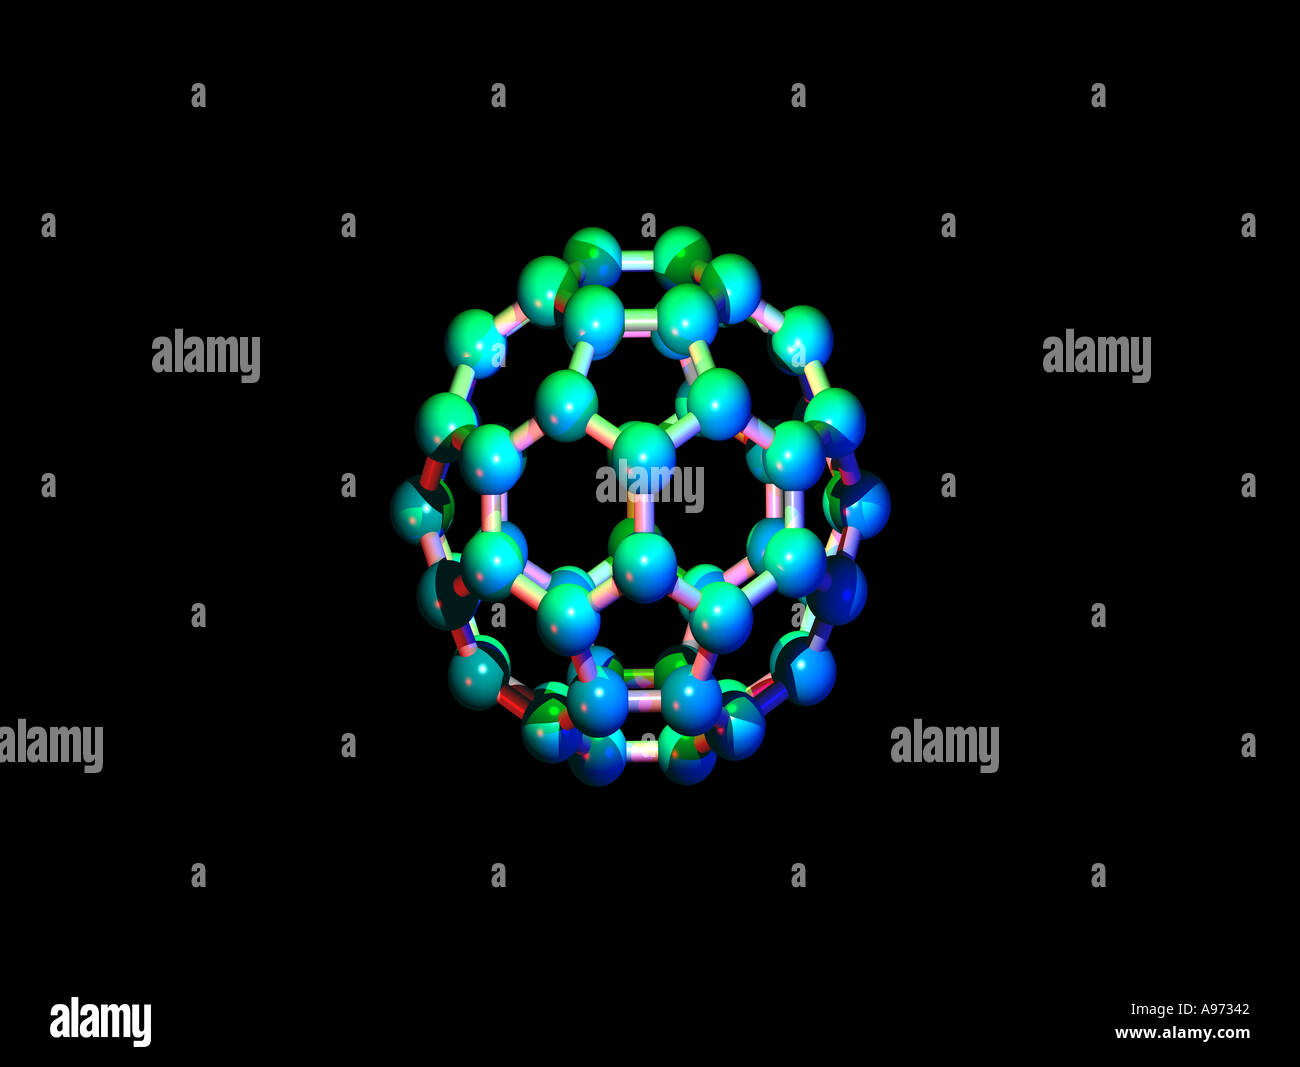 C60 es una forma elemental de carbono compuesto de átomos de carbono dispuestos en una estructura de jaula como un balón de fútbol americano Foto de stock